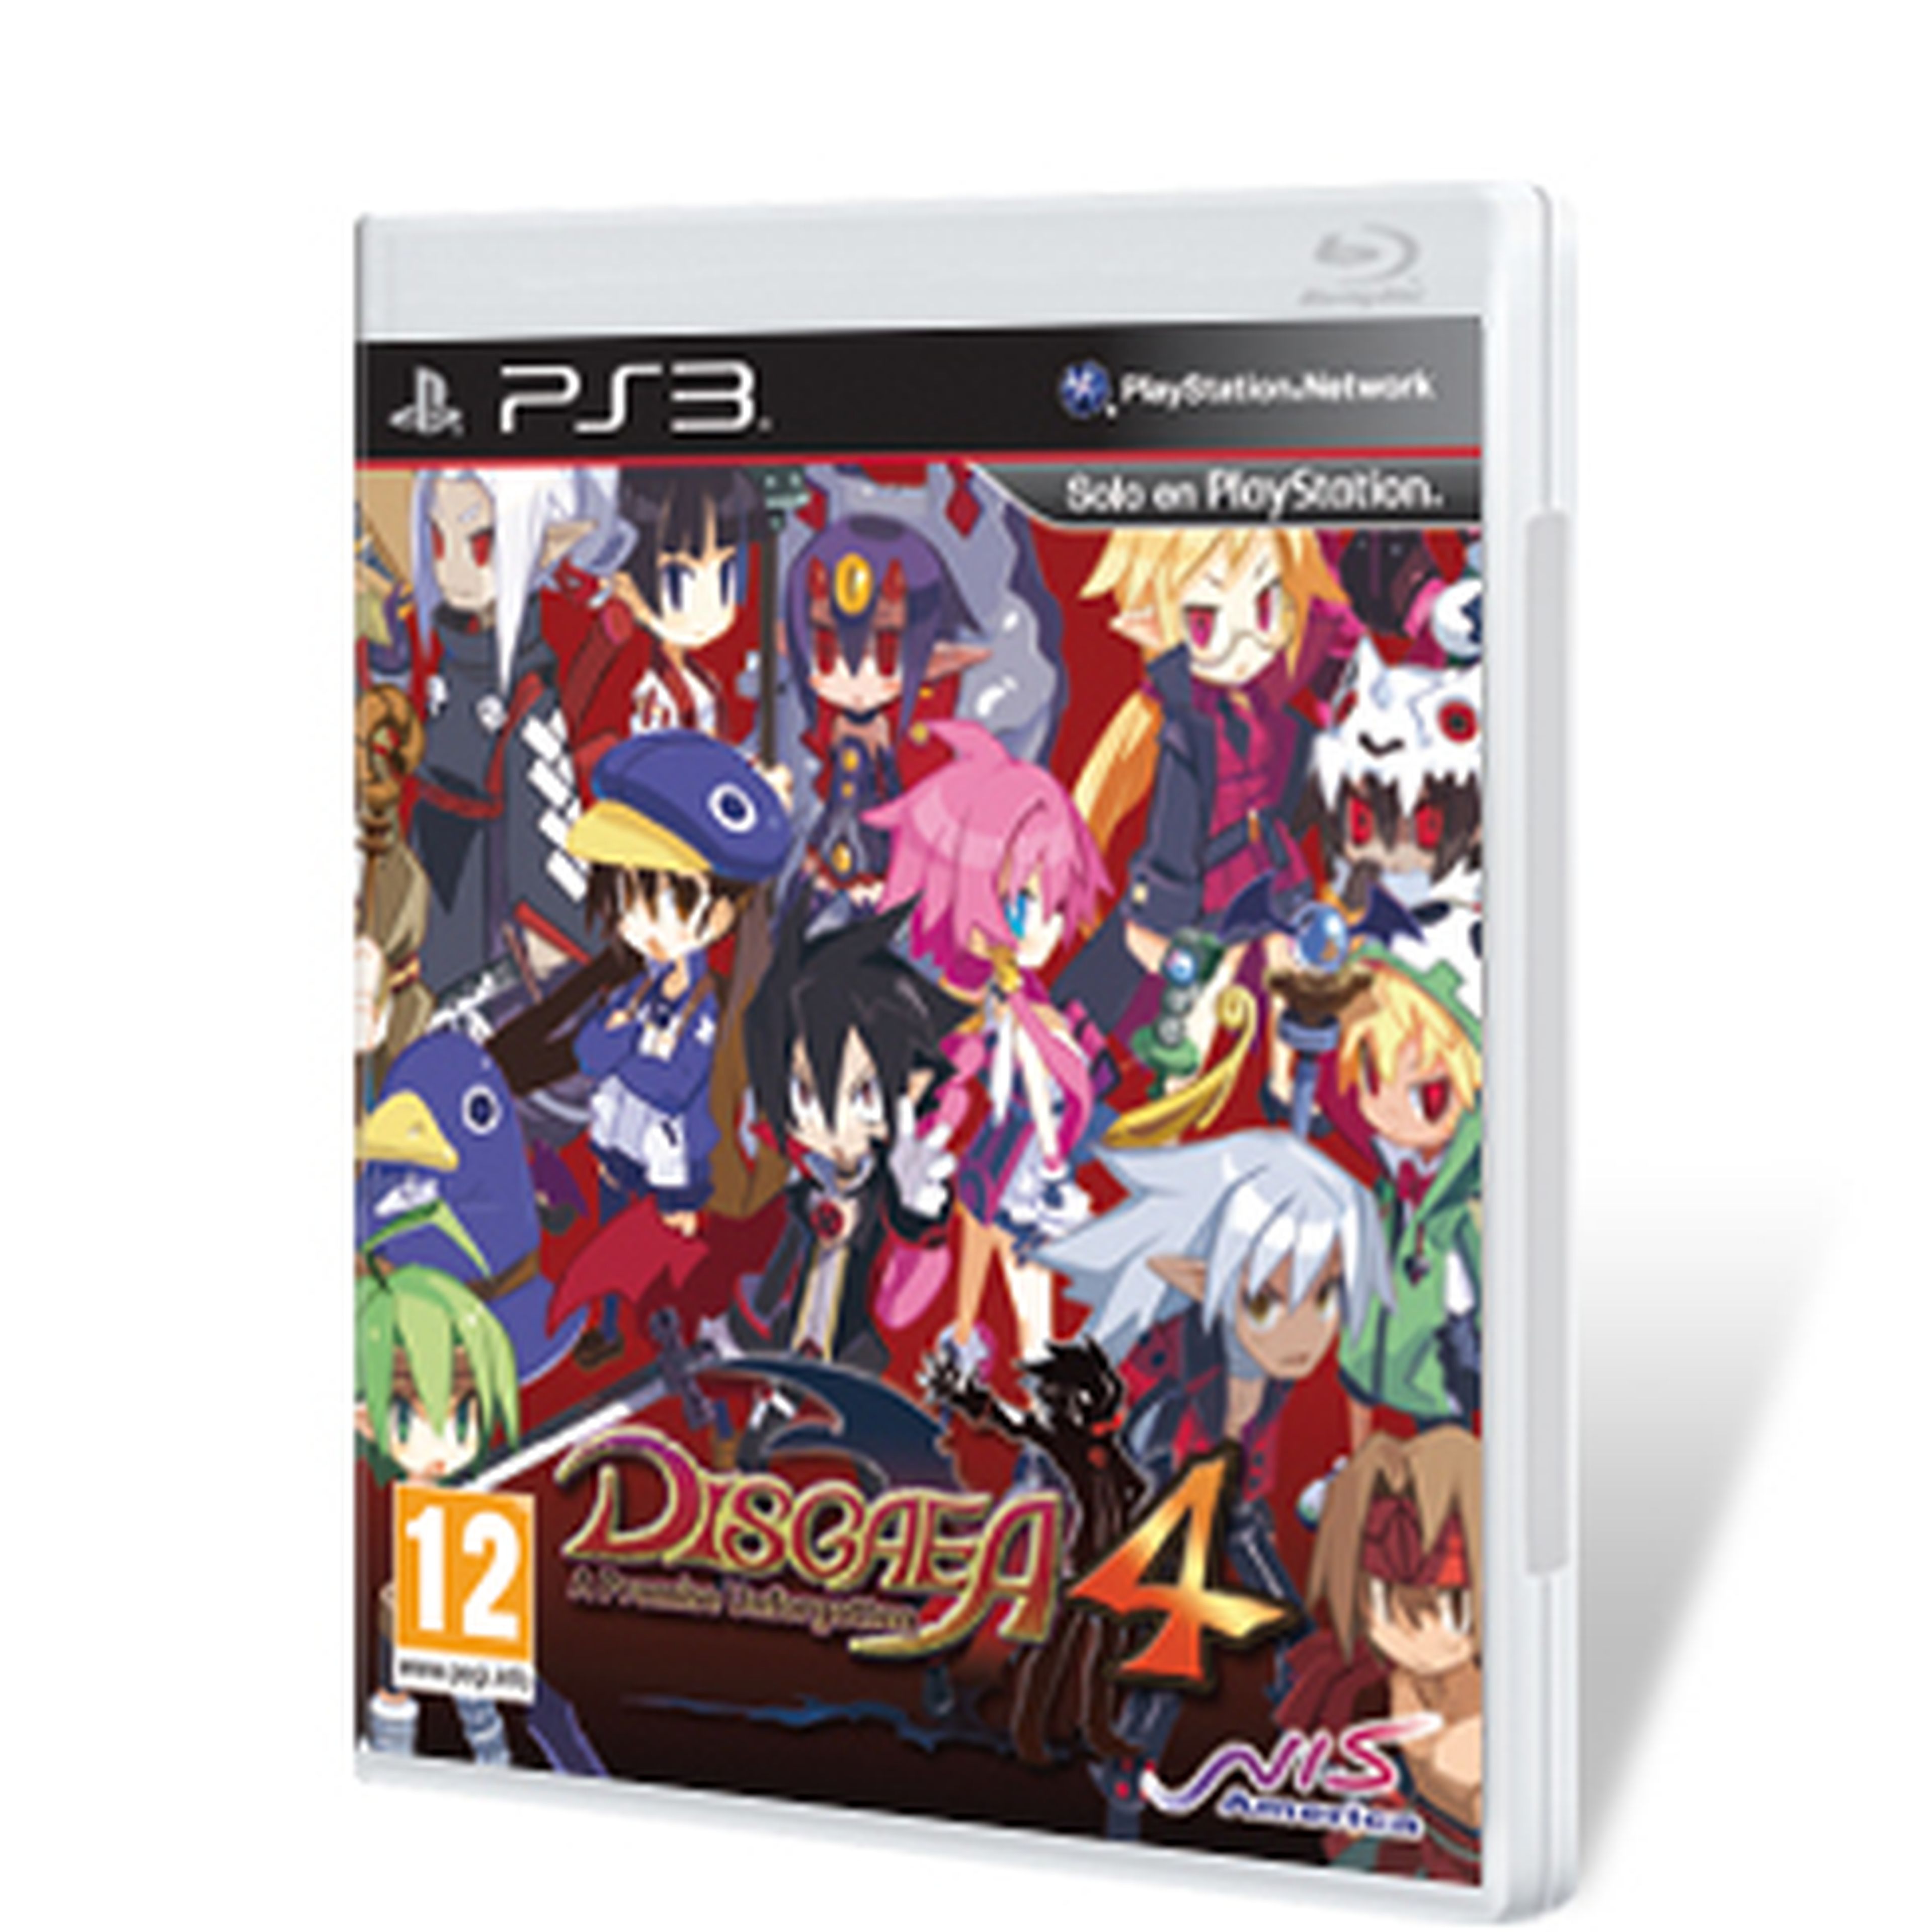 Disgaea 4 para PS3